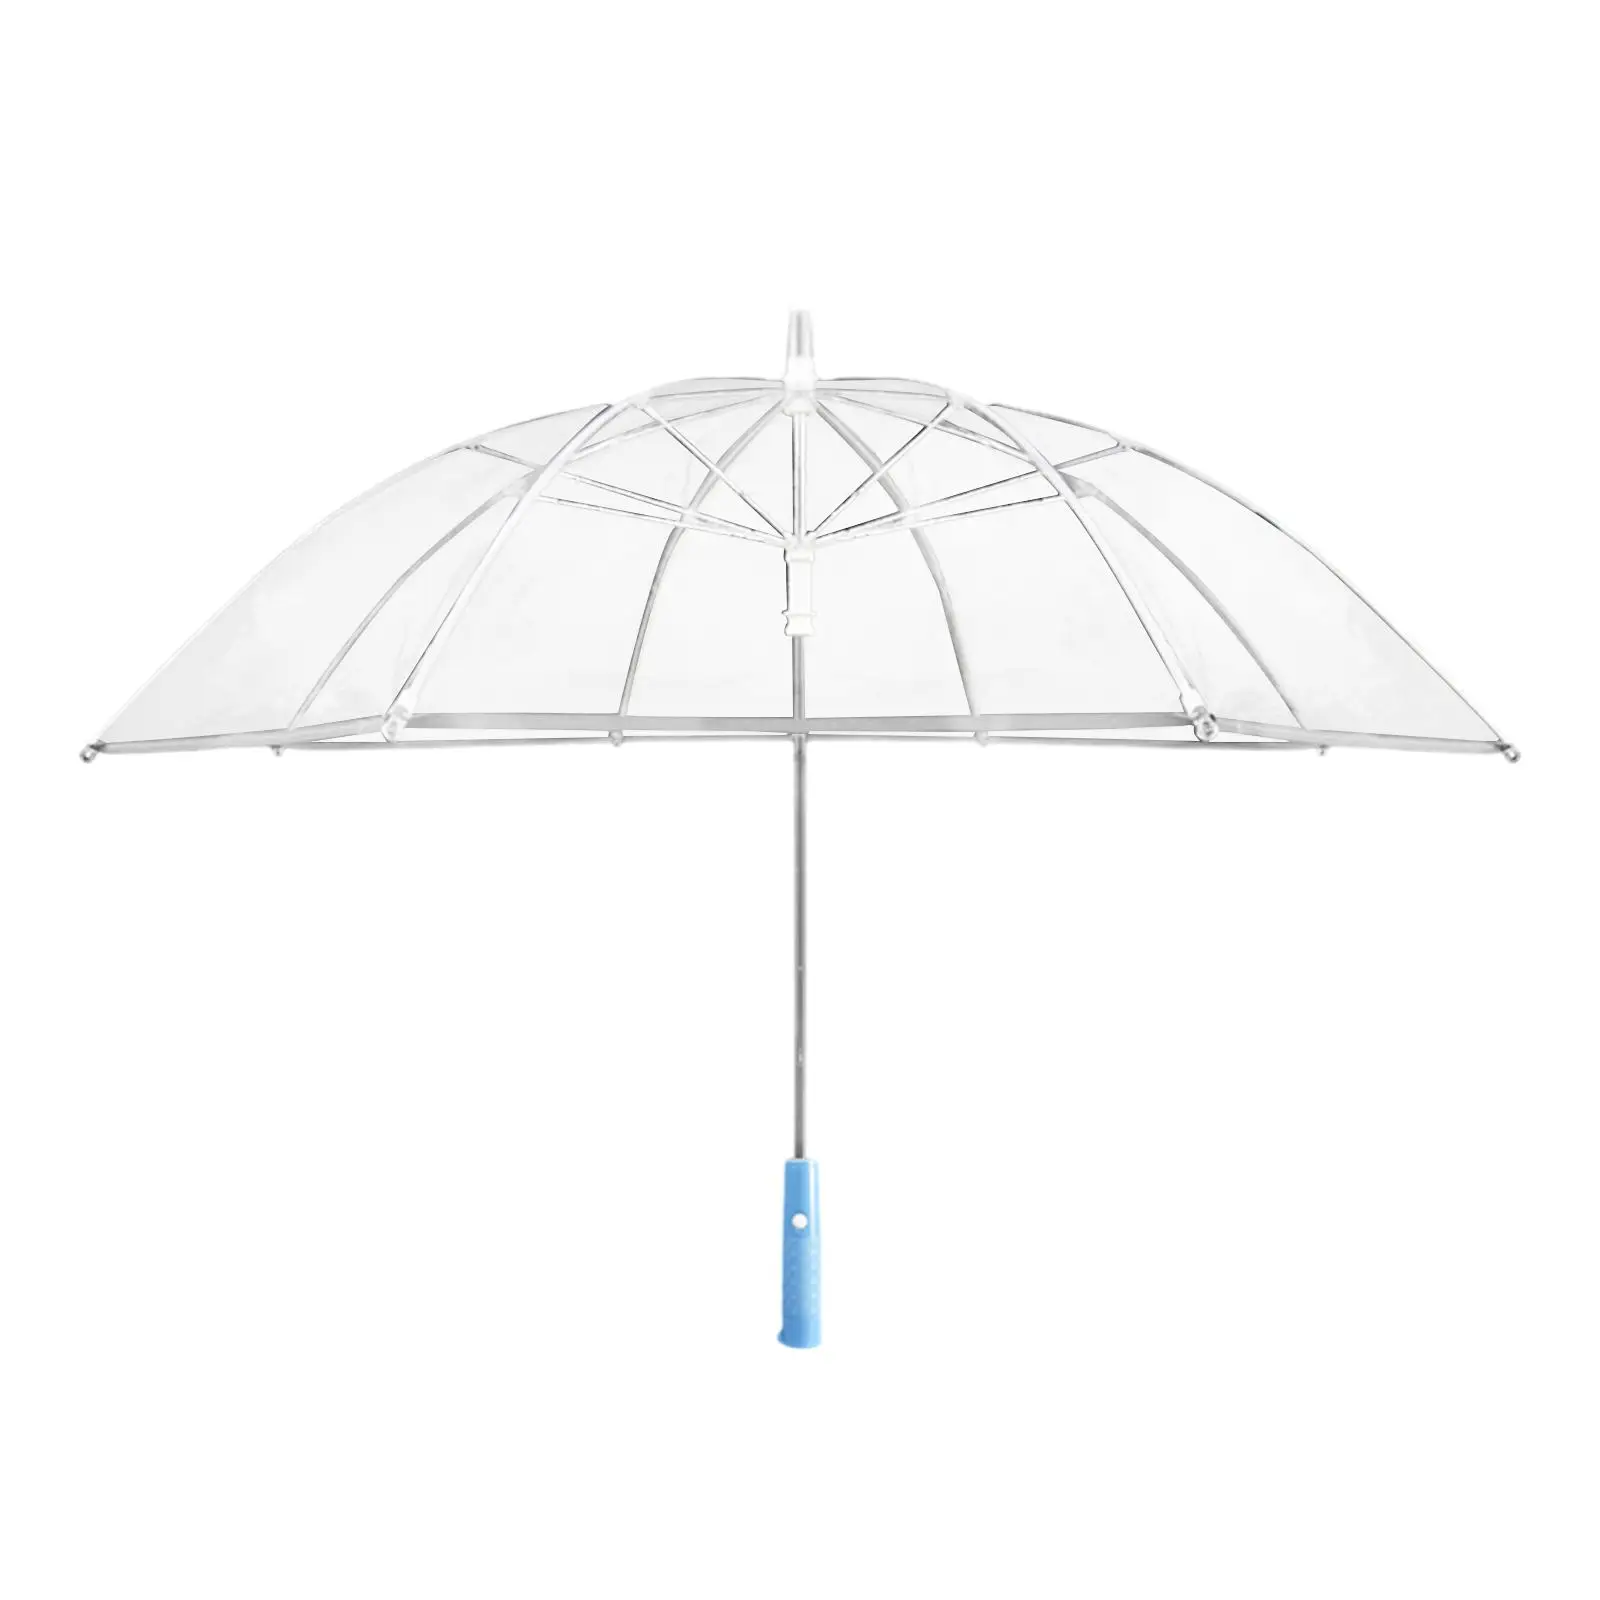 LED Umbrella Stick Umbrella Light up Umbrella Rain Umbrella Straight Umbrella for Outdoor Climbing Backpacking Trips Walking